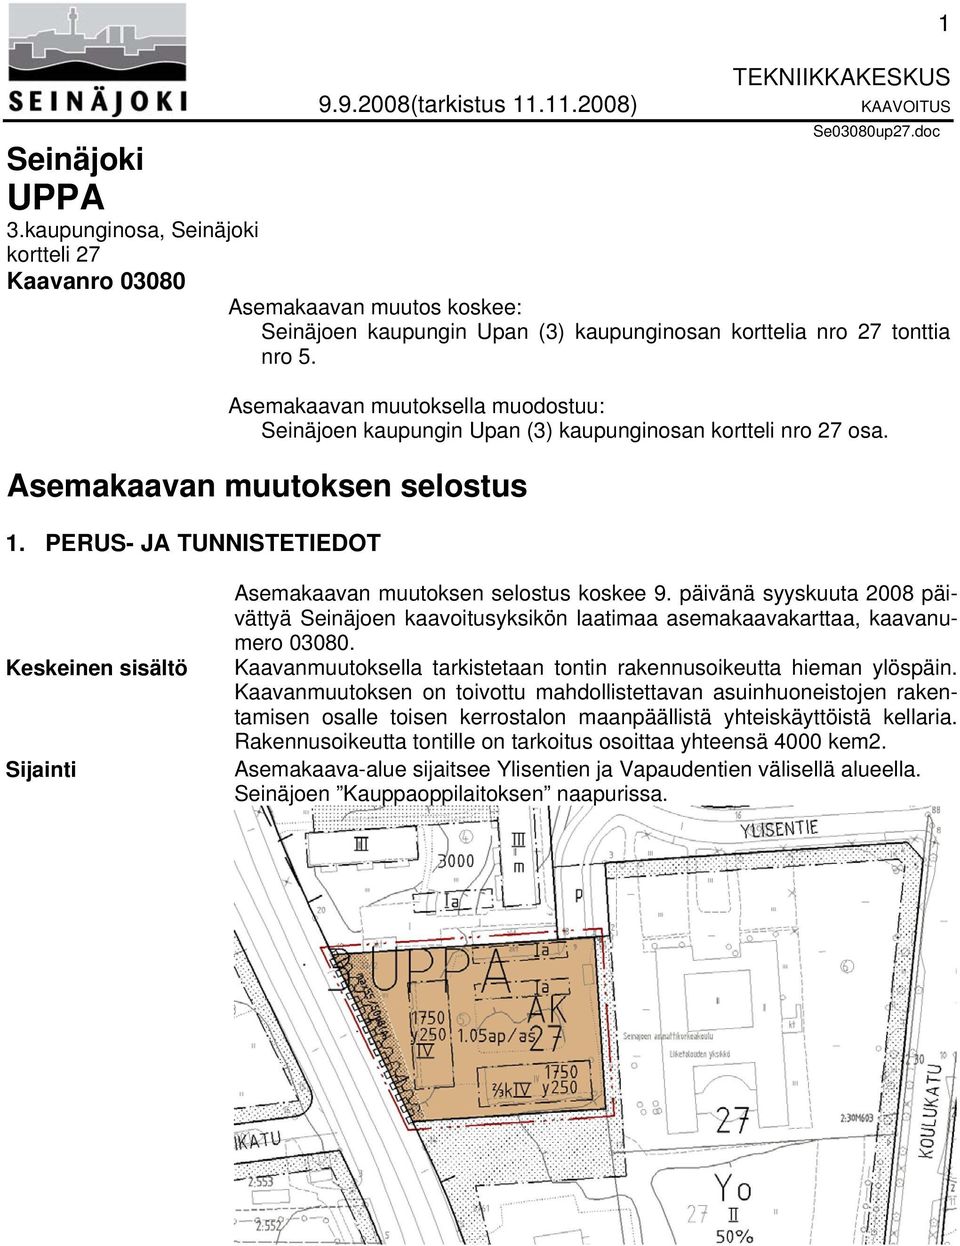 Asemakaavan muutoksella muodostuu: Seinäjoen kaupungin Upan (3) kaupunginosan kortteli nro 27 osa. Asemakaavan muutoksen selostus 1.